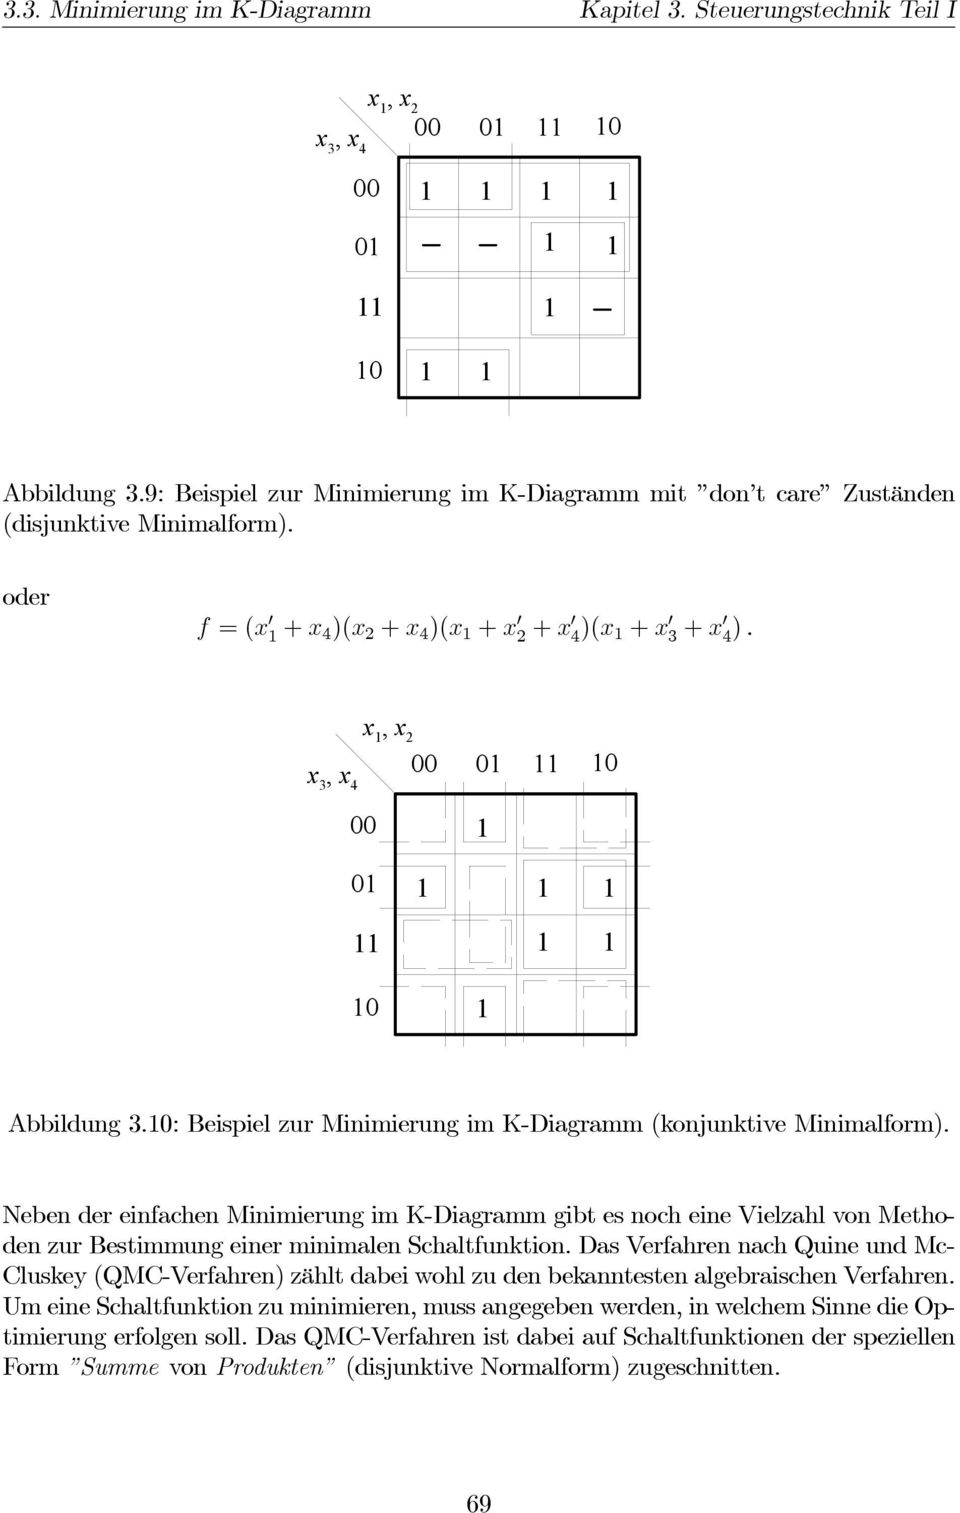 Neben der einfachen Minimierung im K-Diagramm gibt es noch eine Vielzahl von Methoden zur Bestimmung einer minimalen Schaltfunktion.